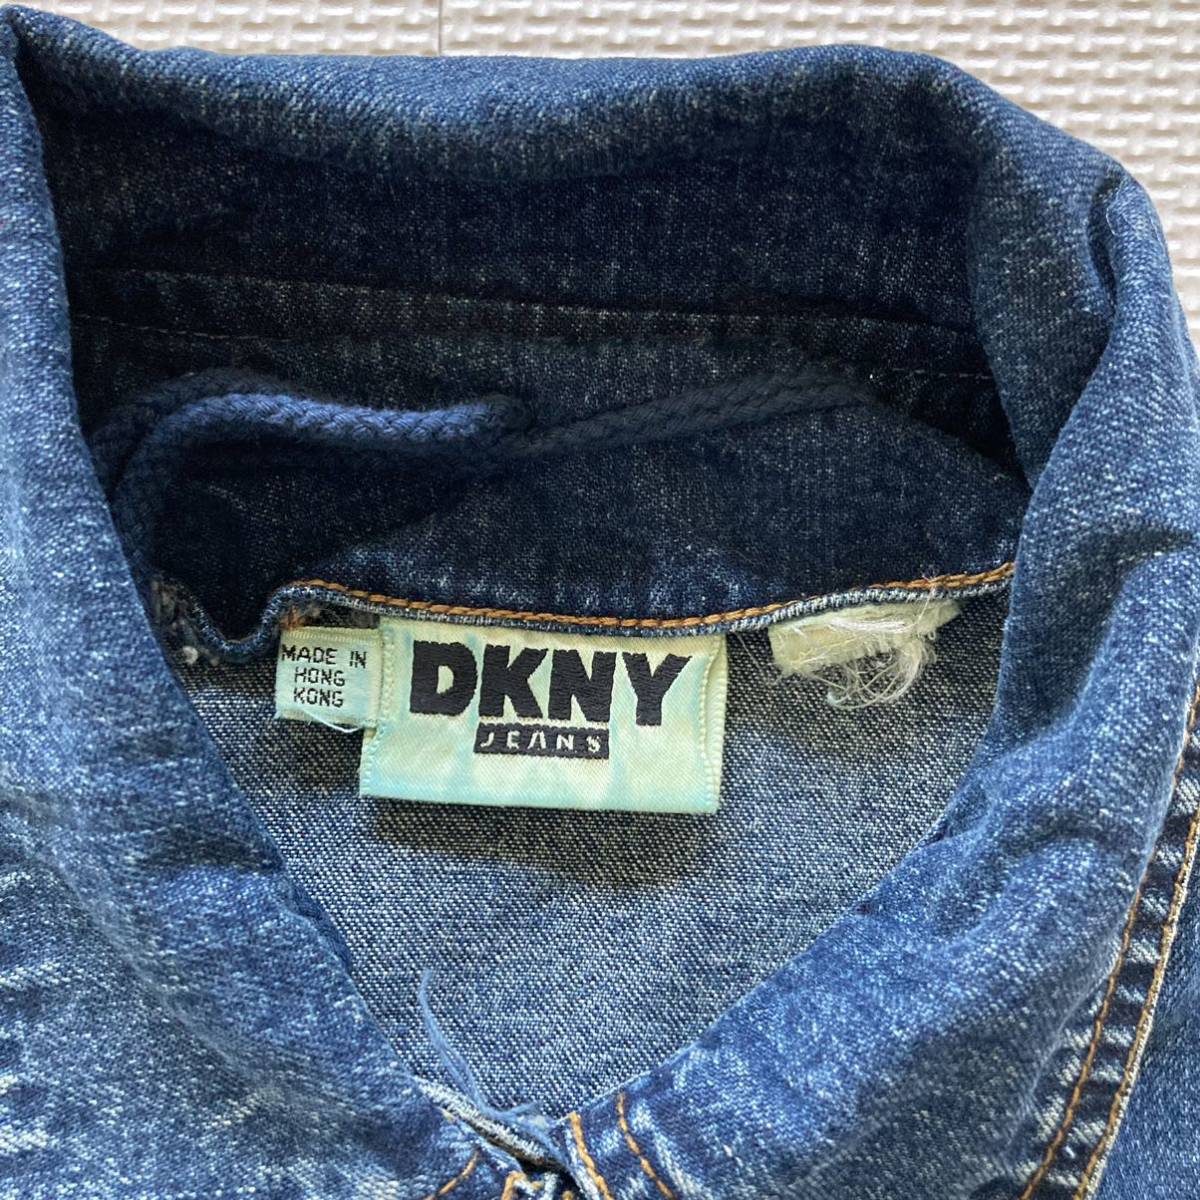 DNKY Donna Karan Denim jacket lady's 